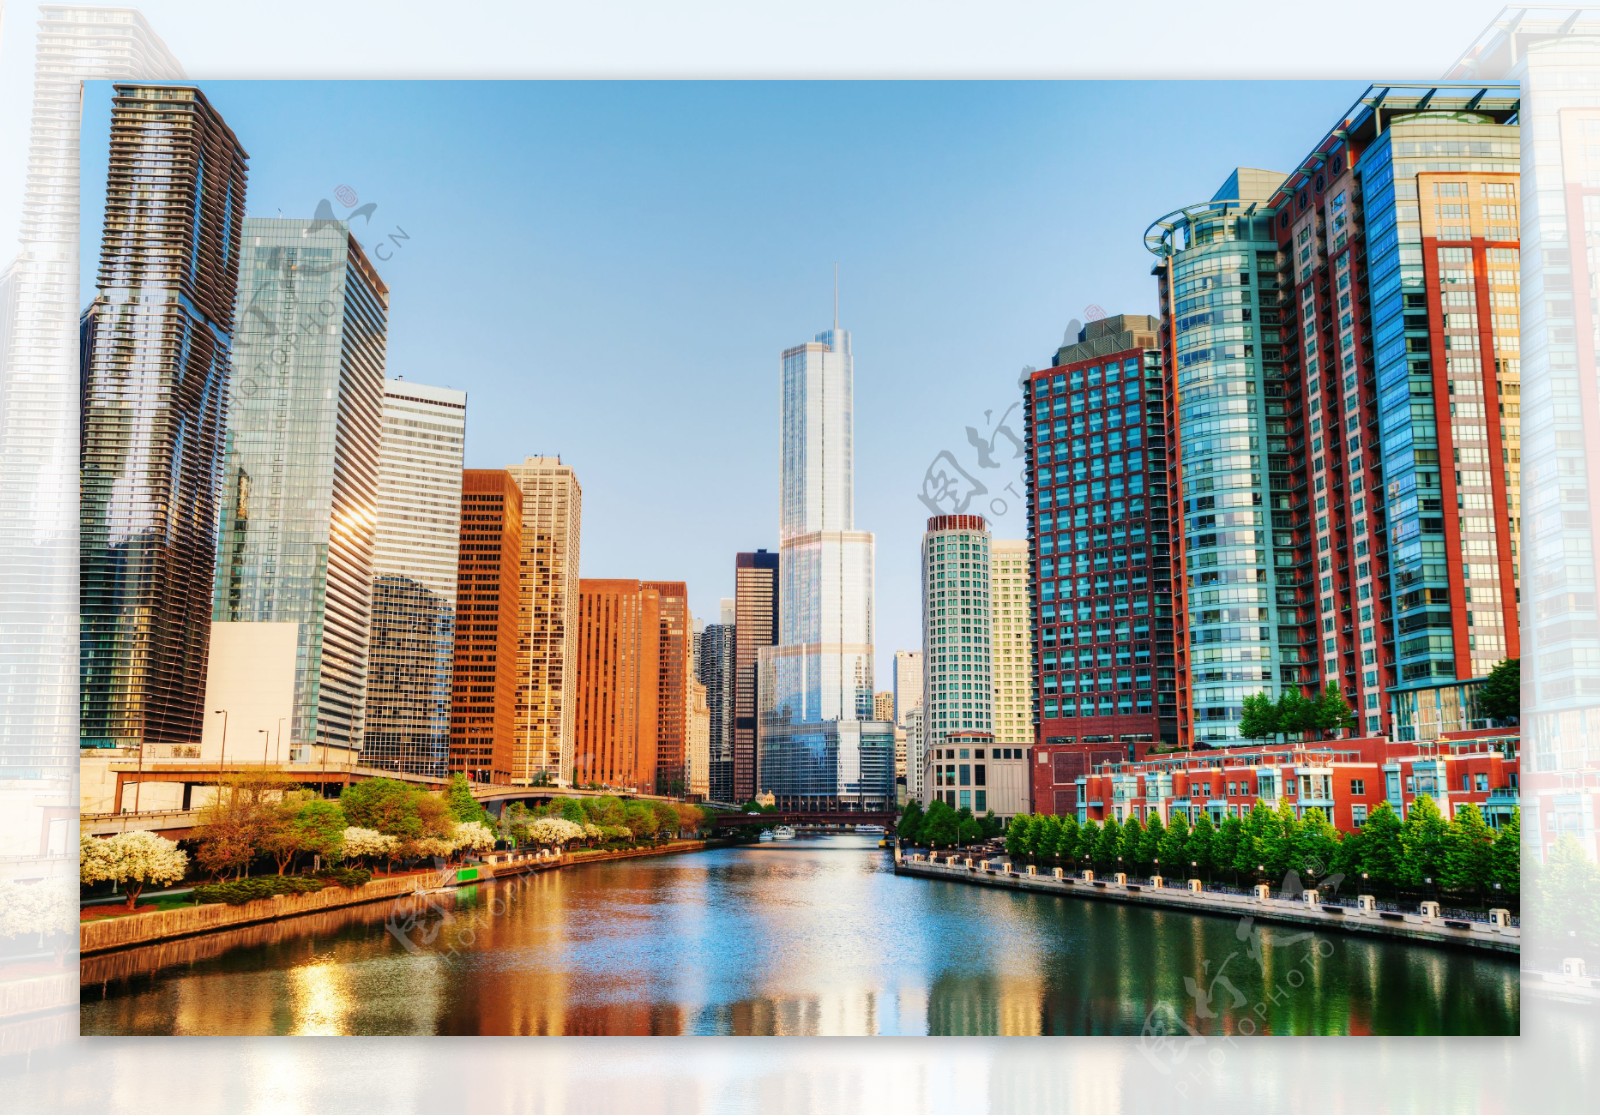 芝加哥高楼风景图片